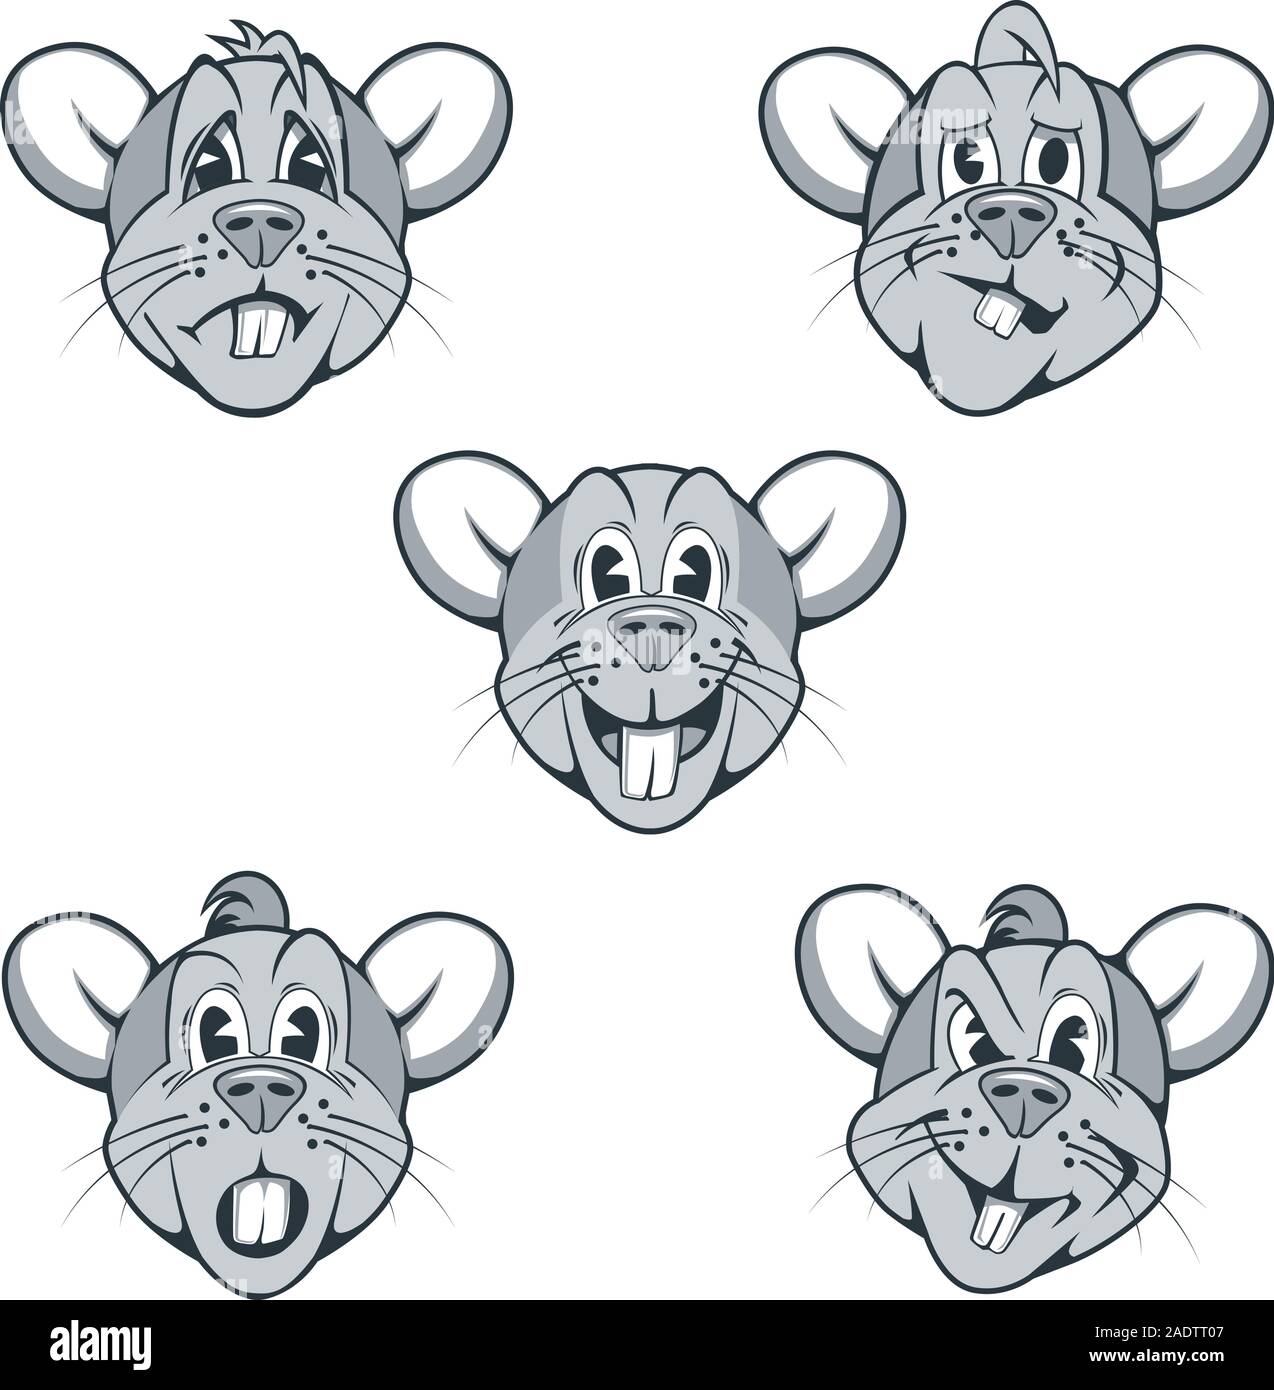 Satz von comicfiguren von Ratten mit verschiedenen Gesichtsausdrücke Stock Vektor